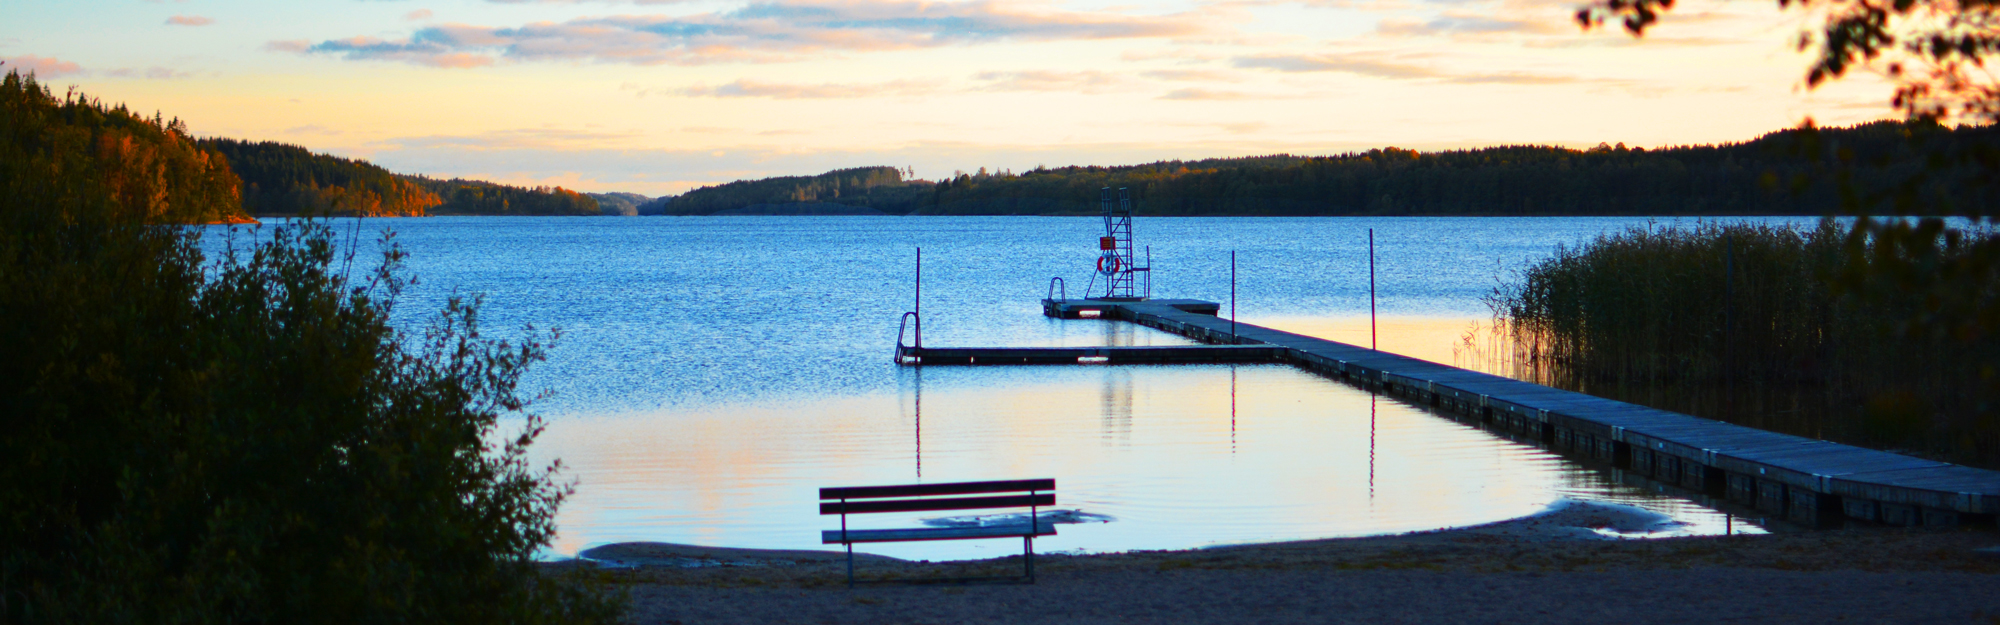 Solnedgång över sjö och badplats.